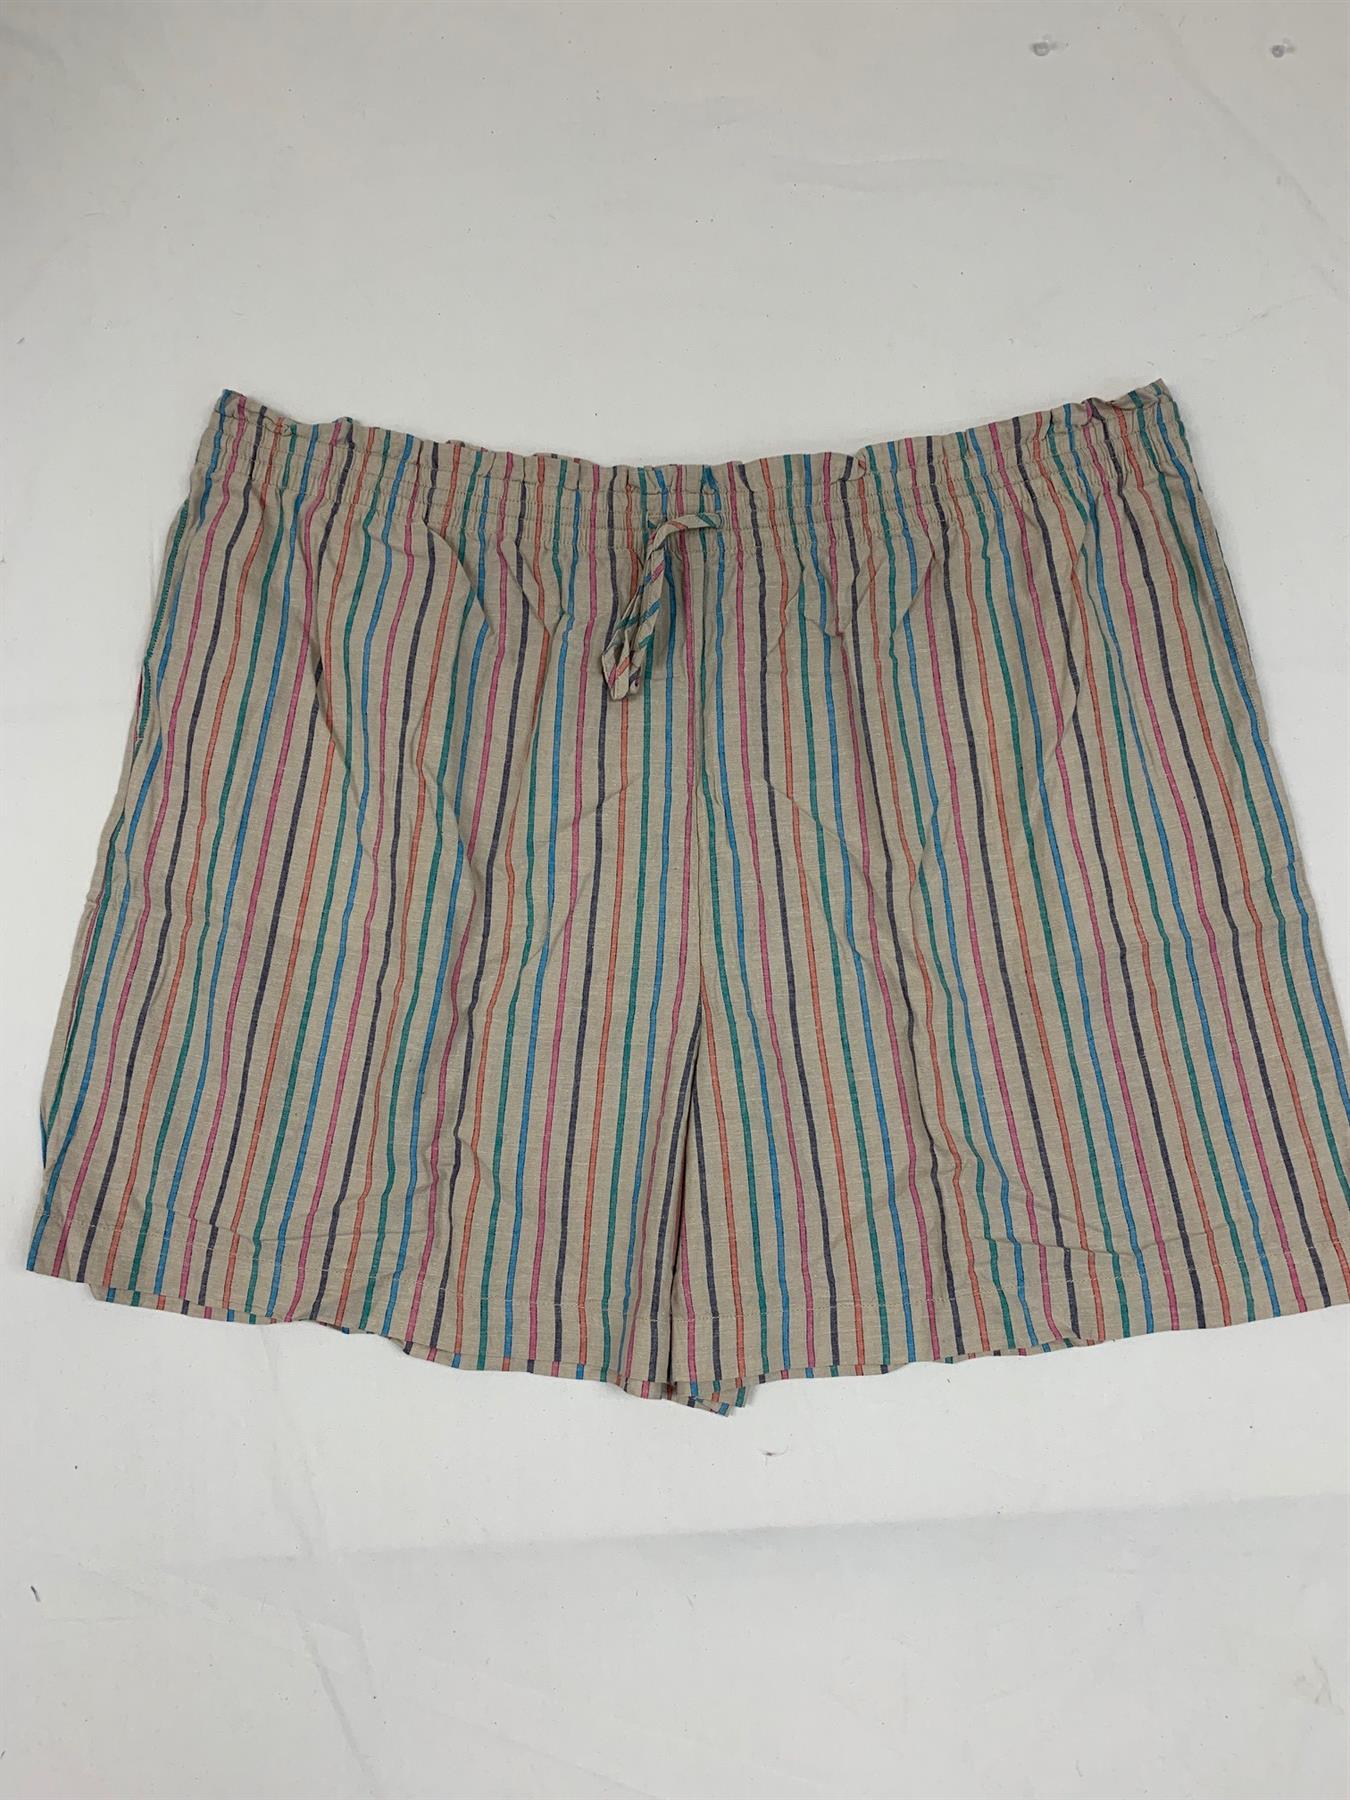 M*S Striped Curve Plus Size Linen Blend Shorts 1XL - 6XL